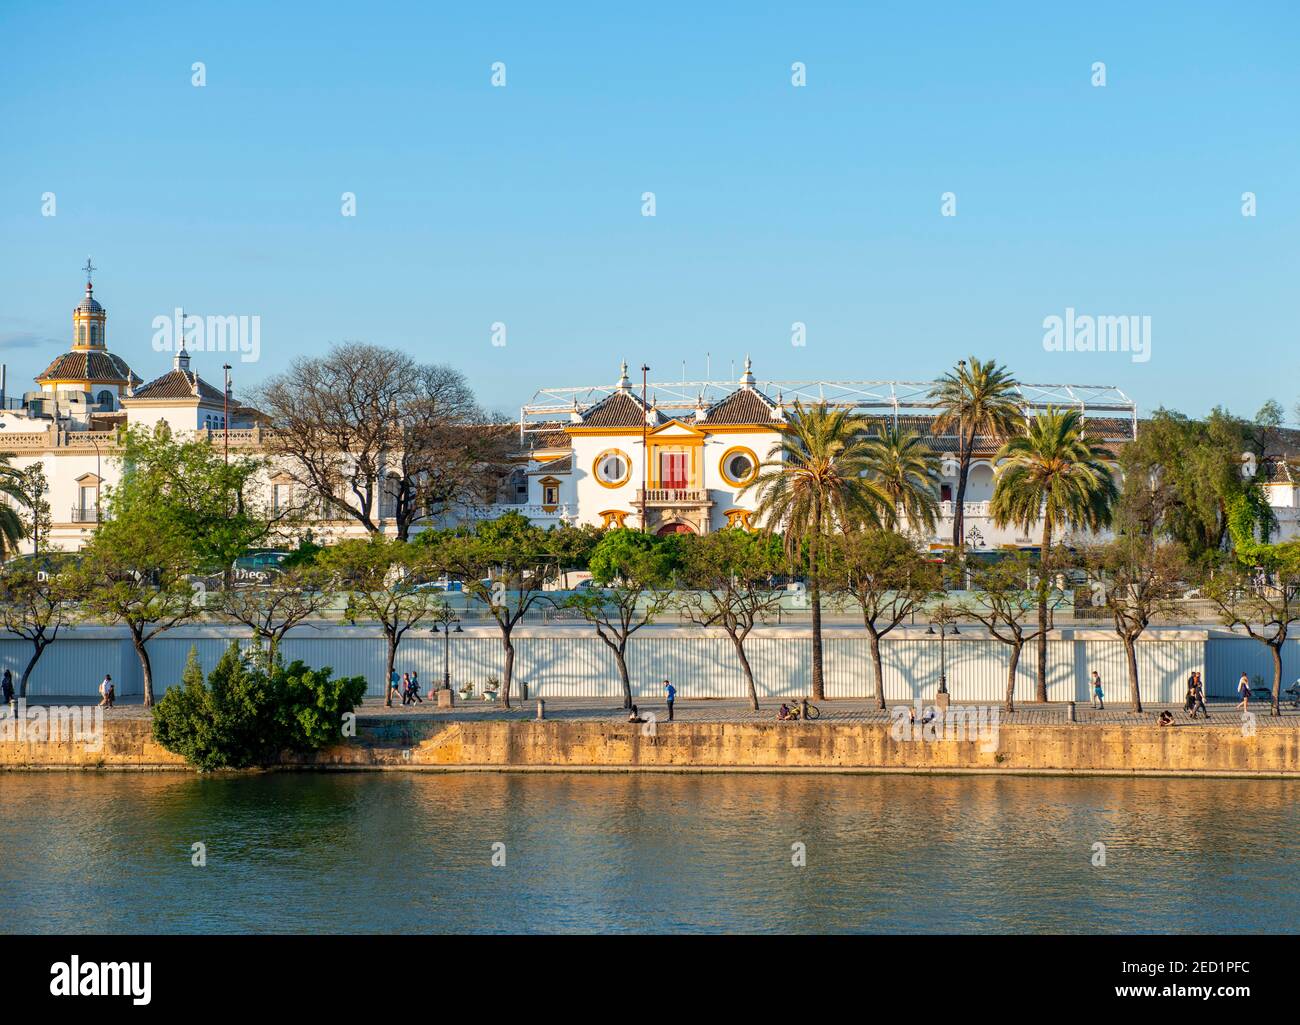 View over the river Rio Guadalquivir to the bullring Plaza de toros de la Real Maestranza de Caballeria de Sevilla, Sevilla, Andalusia, Spain Stock Photo